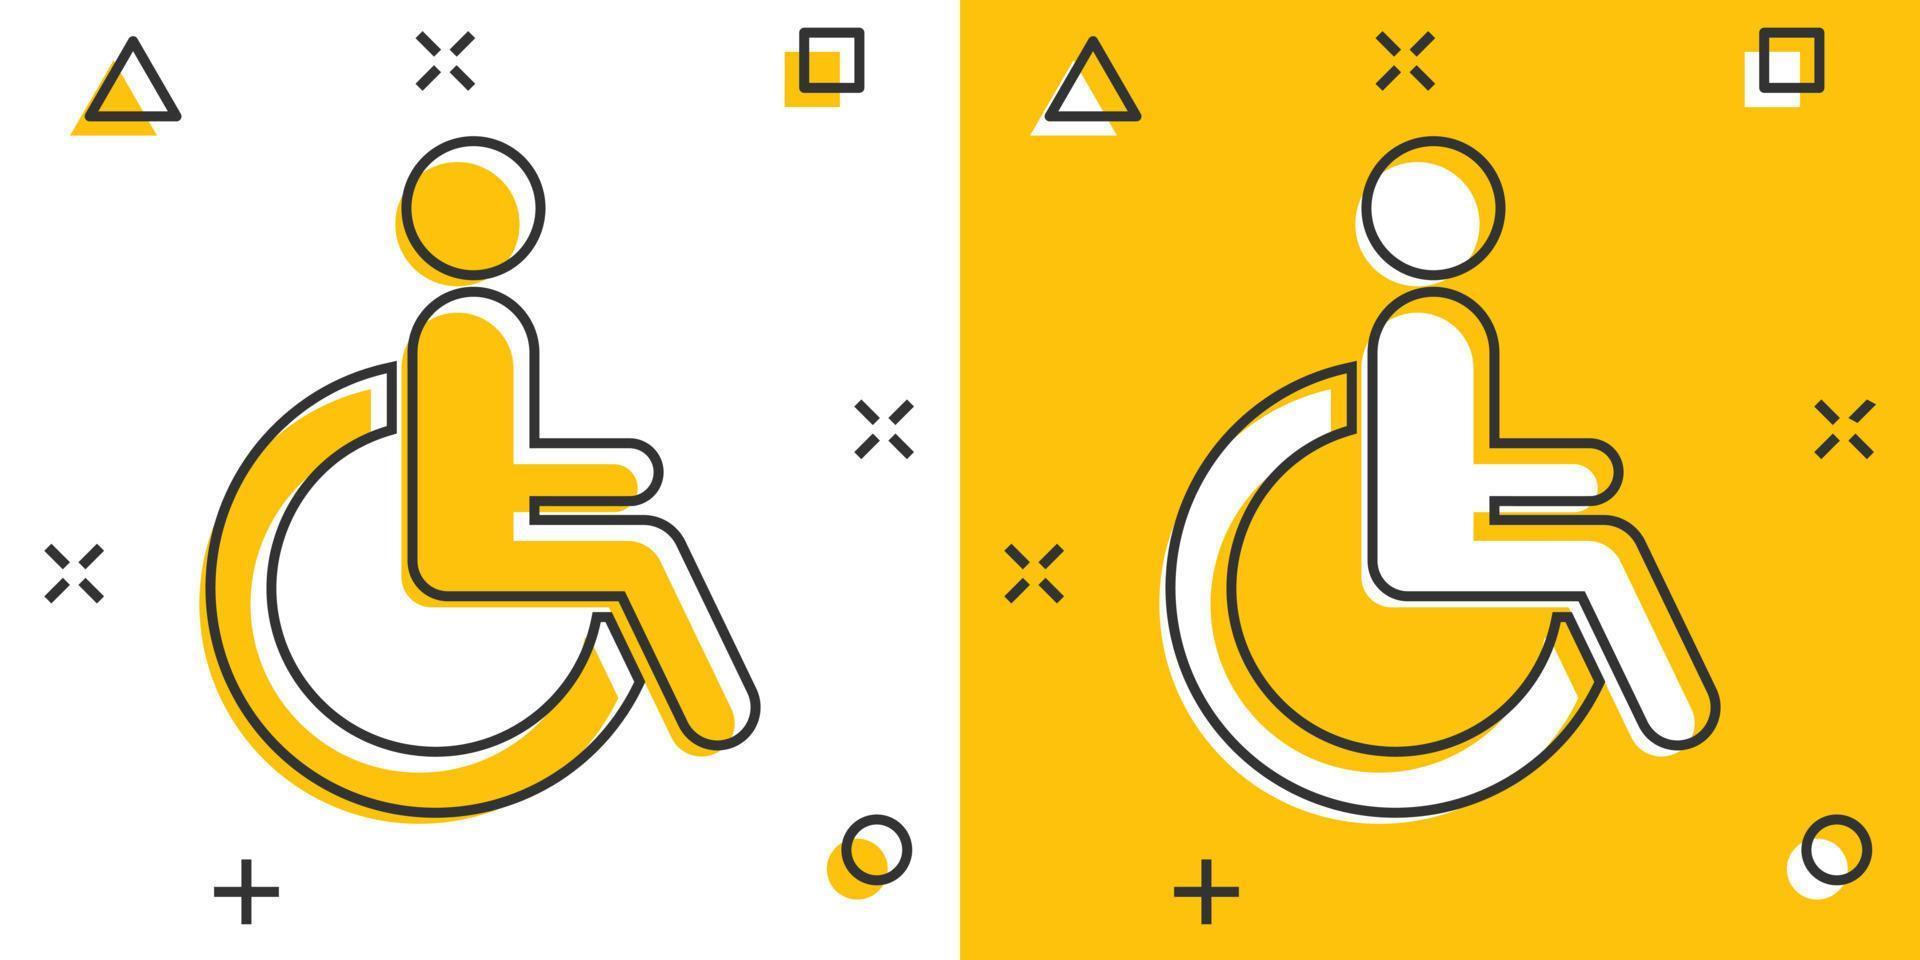 homme de dessin animé de vecteur en icône de fauteuil roulant dans le style comique. pictogramme d'illustration de signe invalide handicapé. concept d'effet d'éclaboussure d'entreprise de personnes.